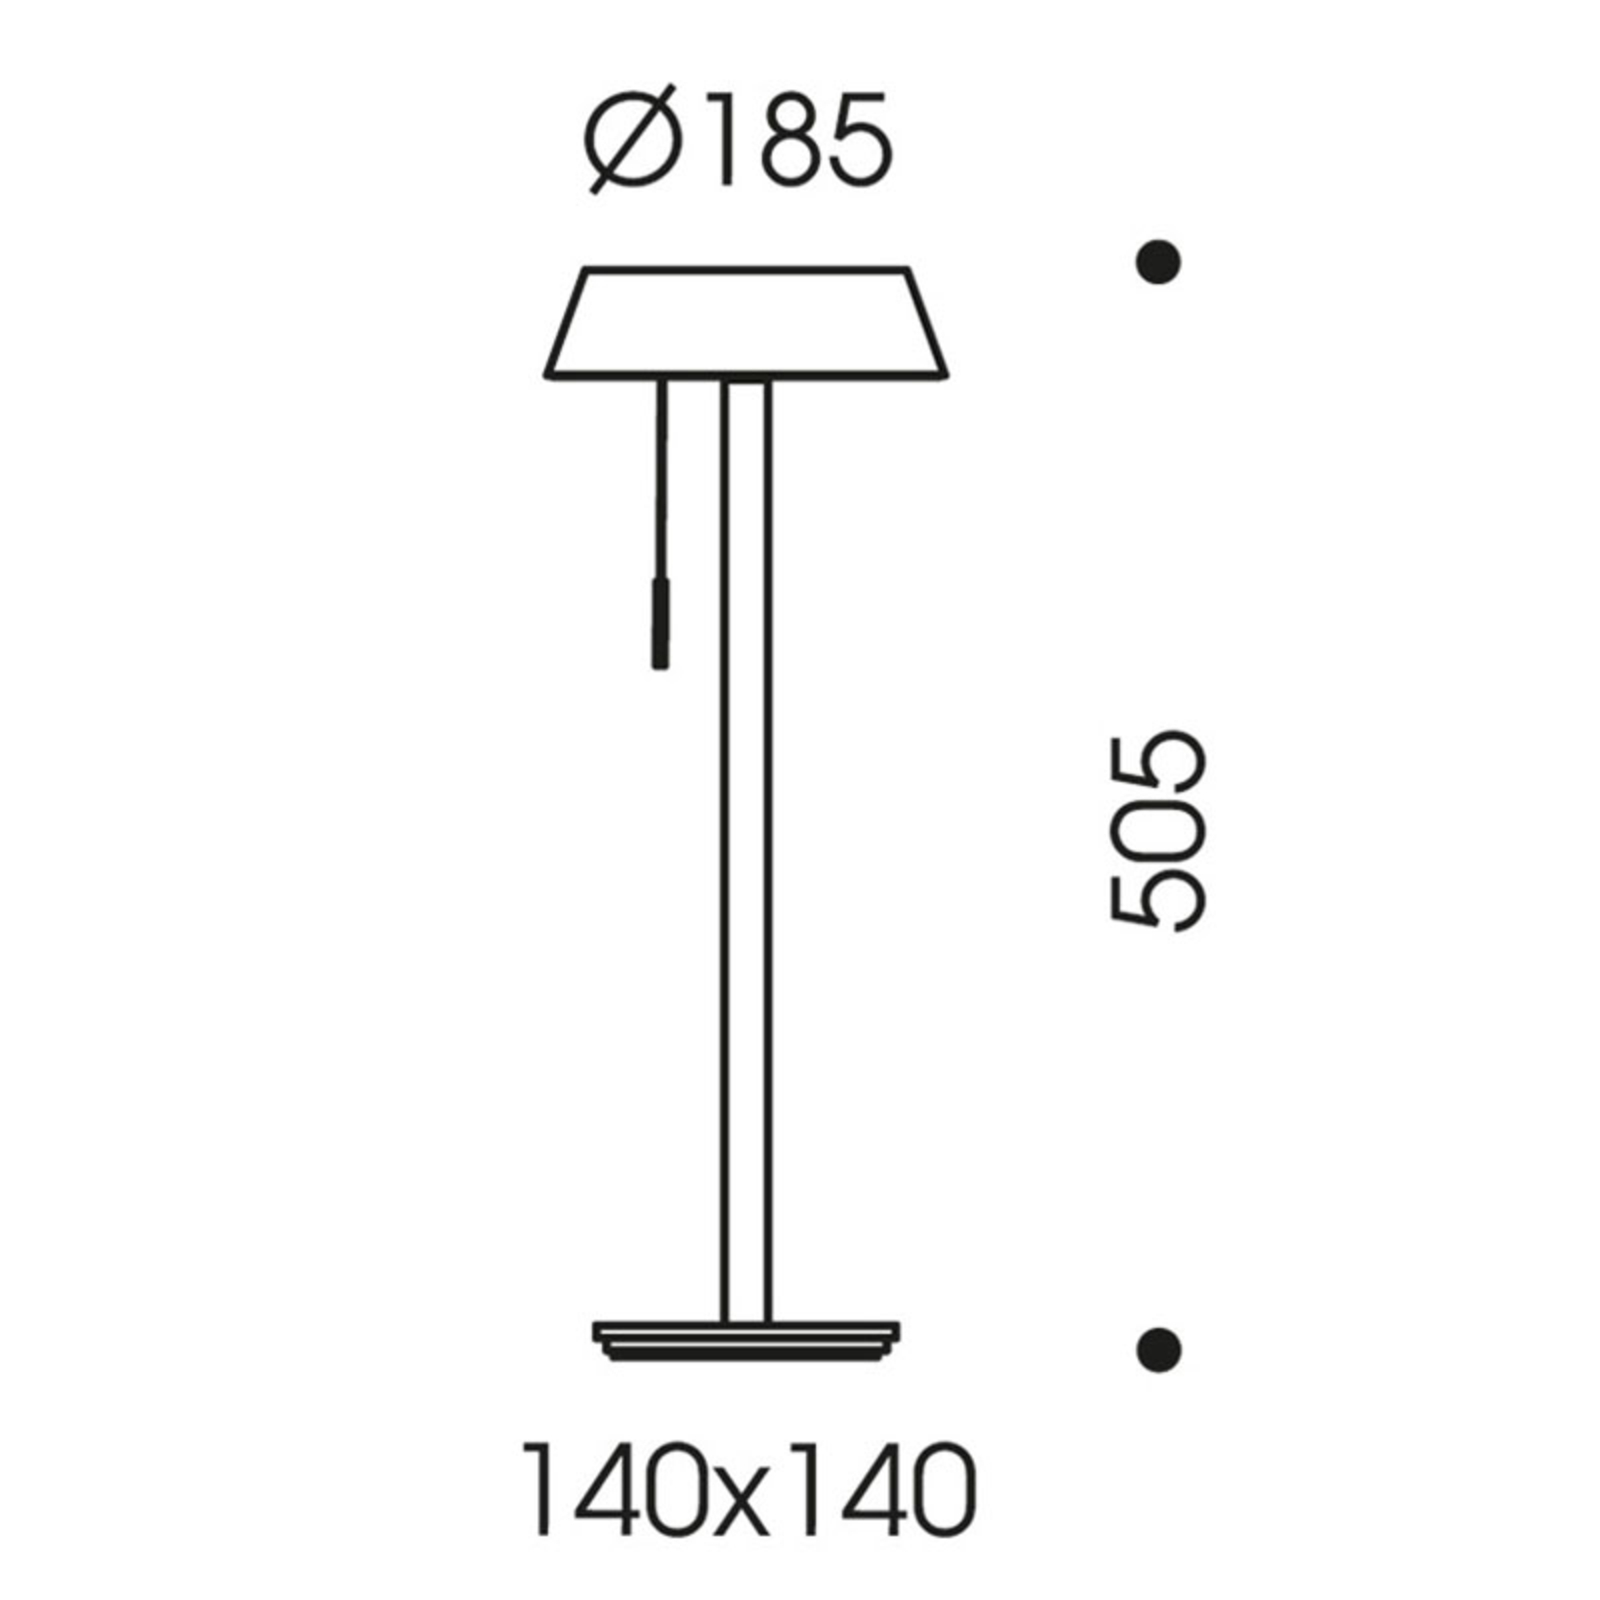 OLIGO Glance LED table lamp cashmere